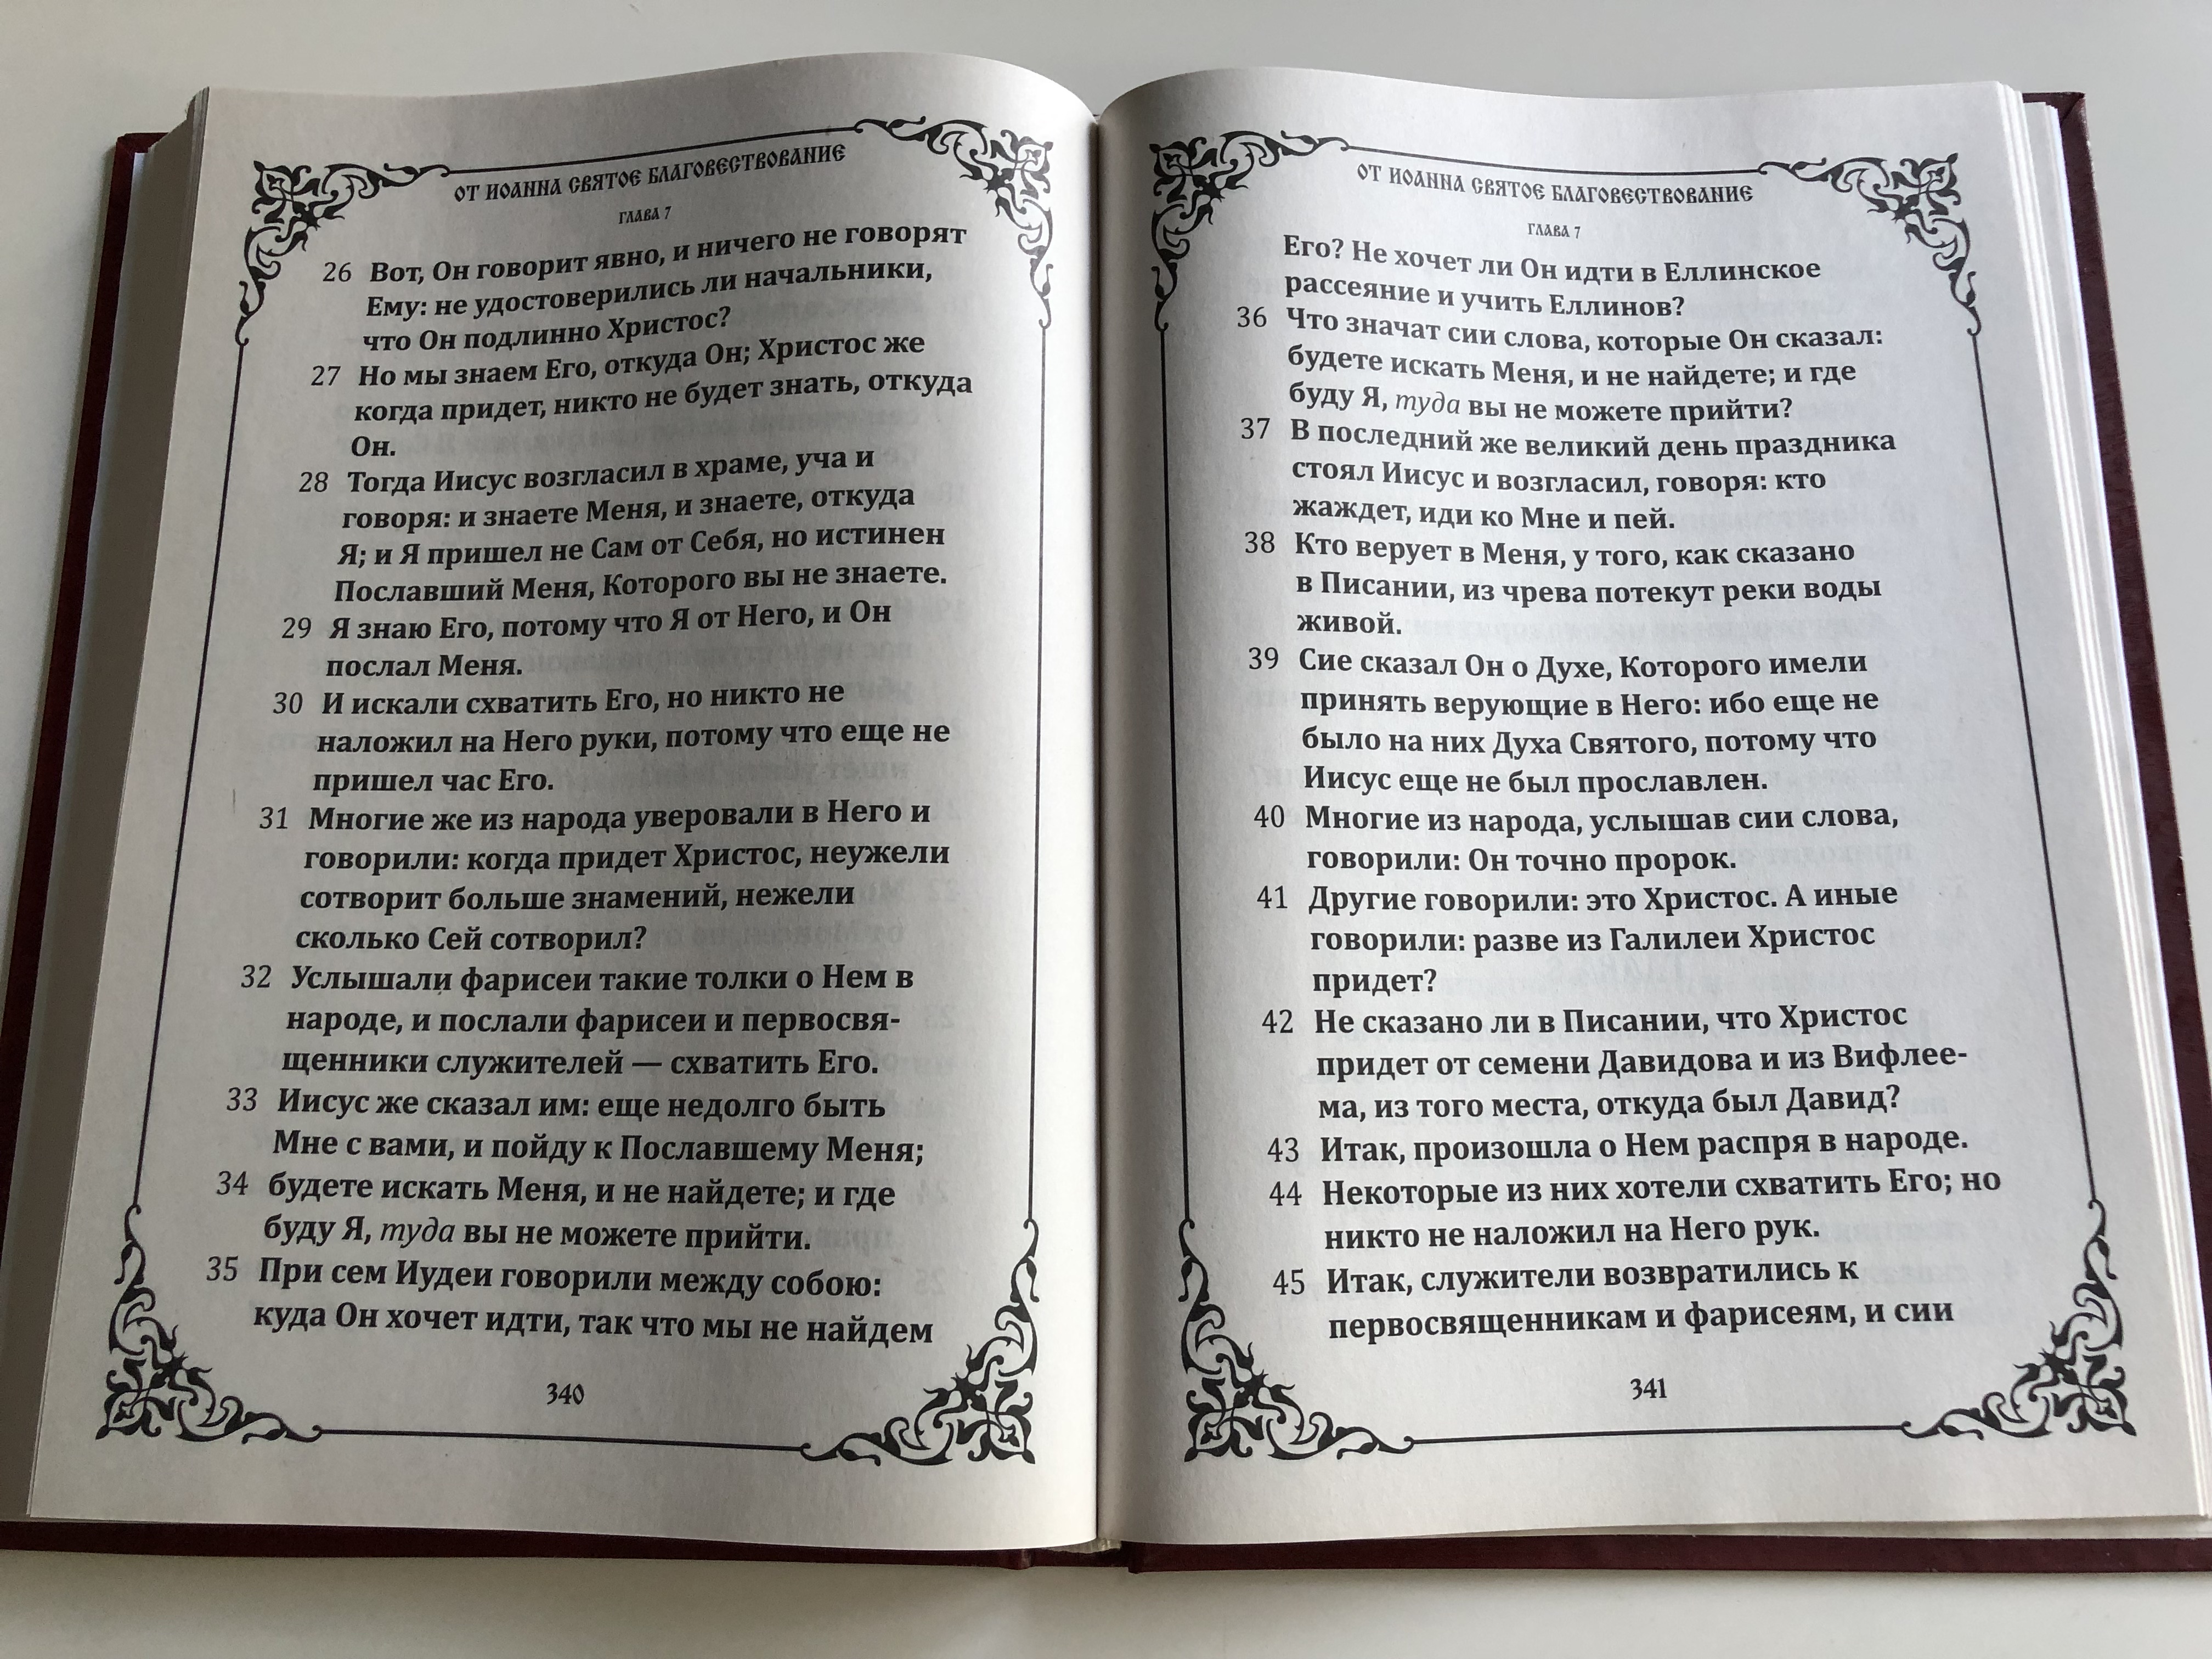 the-four-gospels-in-russian-large-print-for-the-elderly-the-gospels-according-to-matthew-mark-luke-john-orthodox-cover-theme-8-.jpg